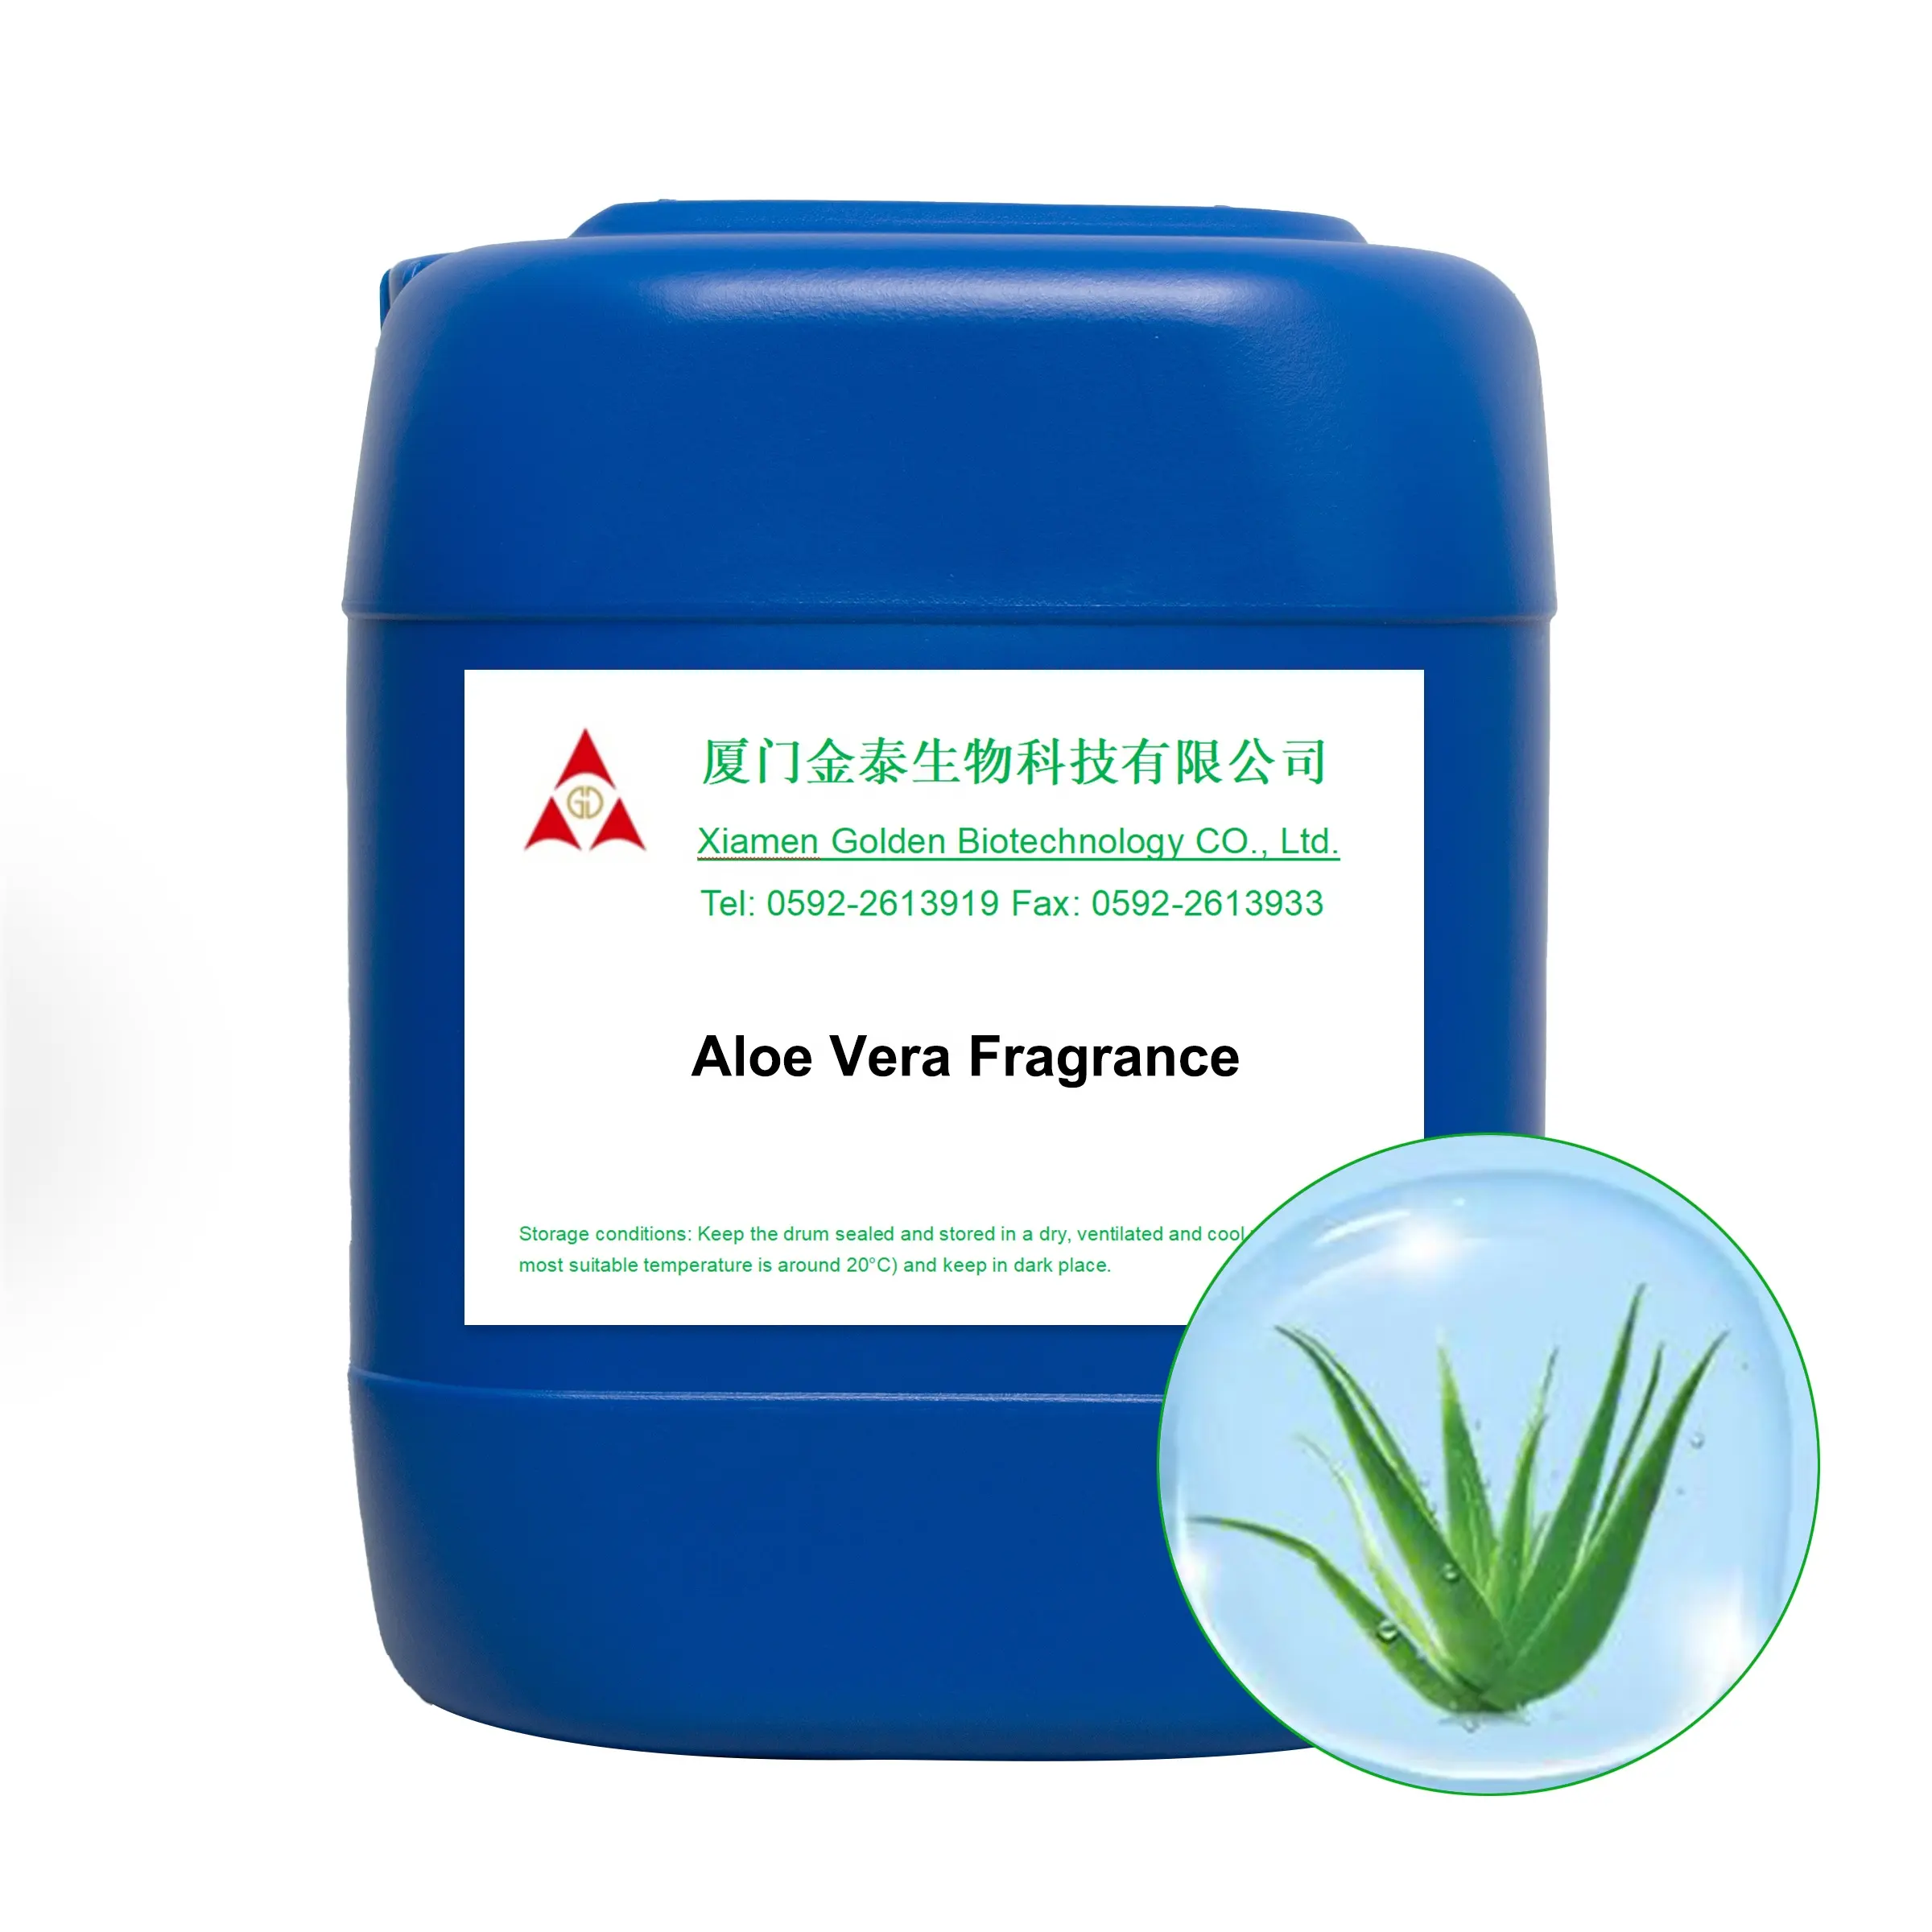 Fabricante da China fornece diretamente fragrância de Aloe para lenços umedecidos, detergente de alta concentração, óleo de fragrância com sabor industrial